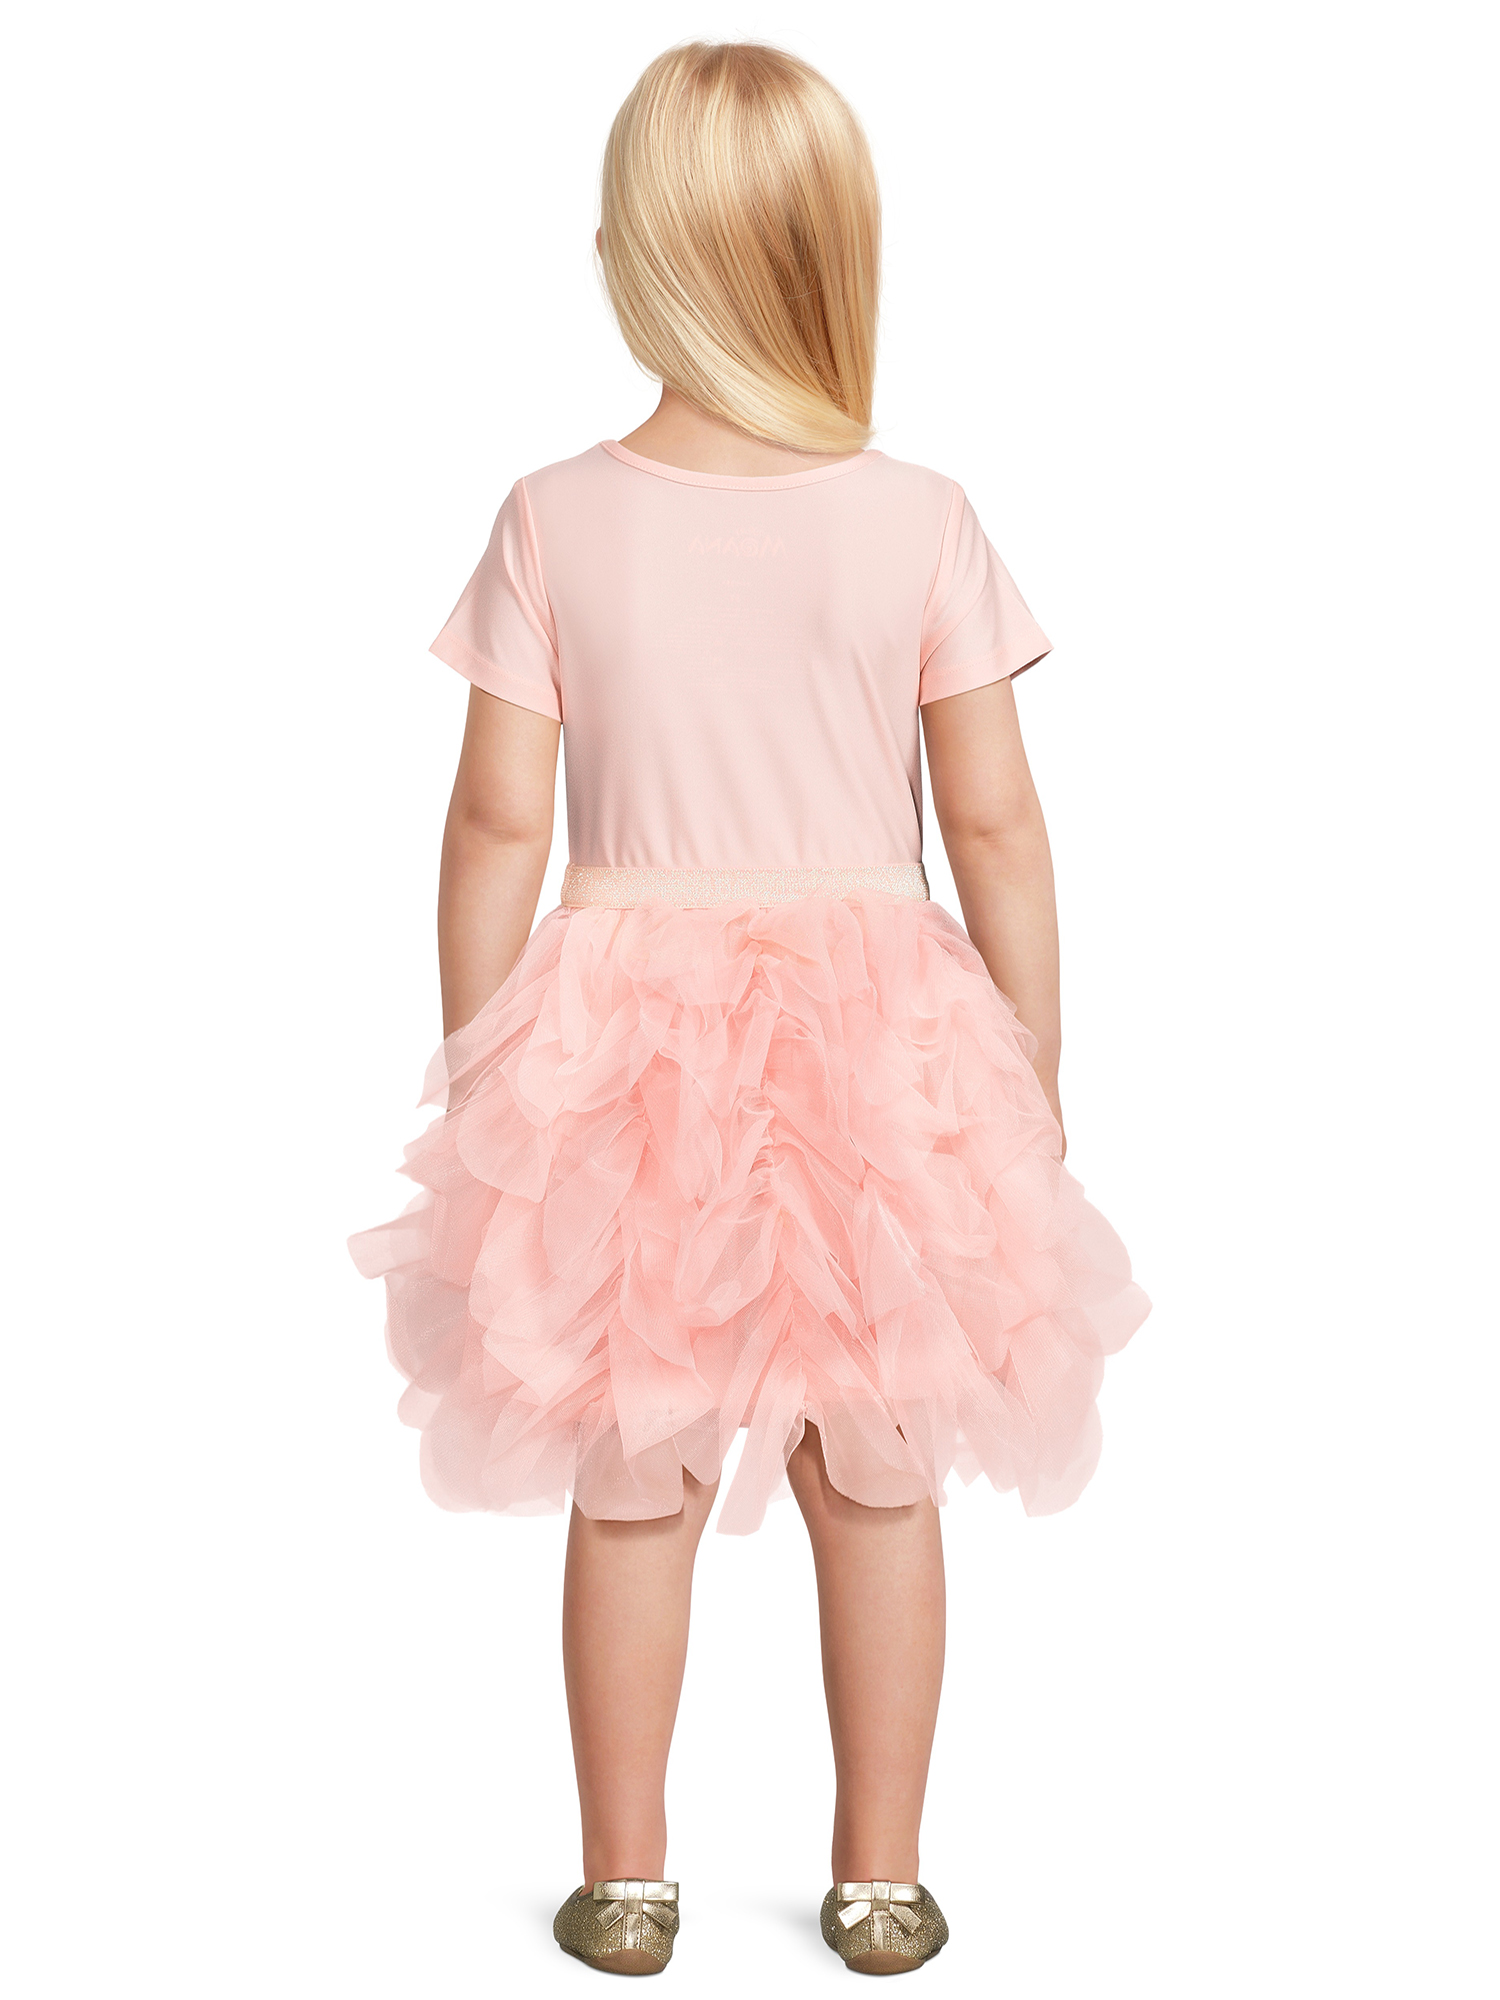 Disney Moana Toddler Girl Short Sleeve Tutu Dress, Sizes 12M-5T - image 3 of 6